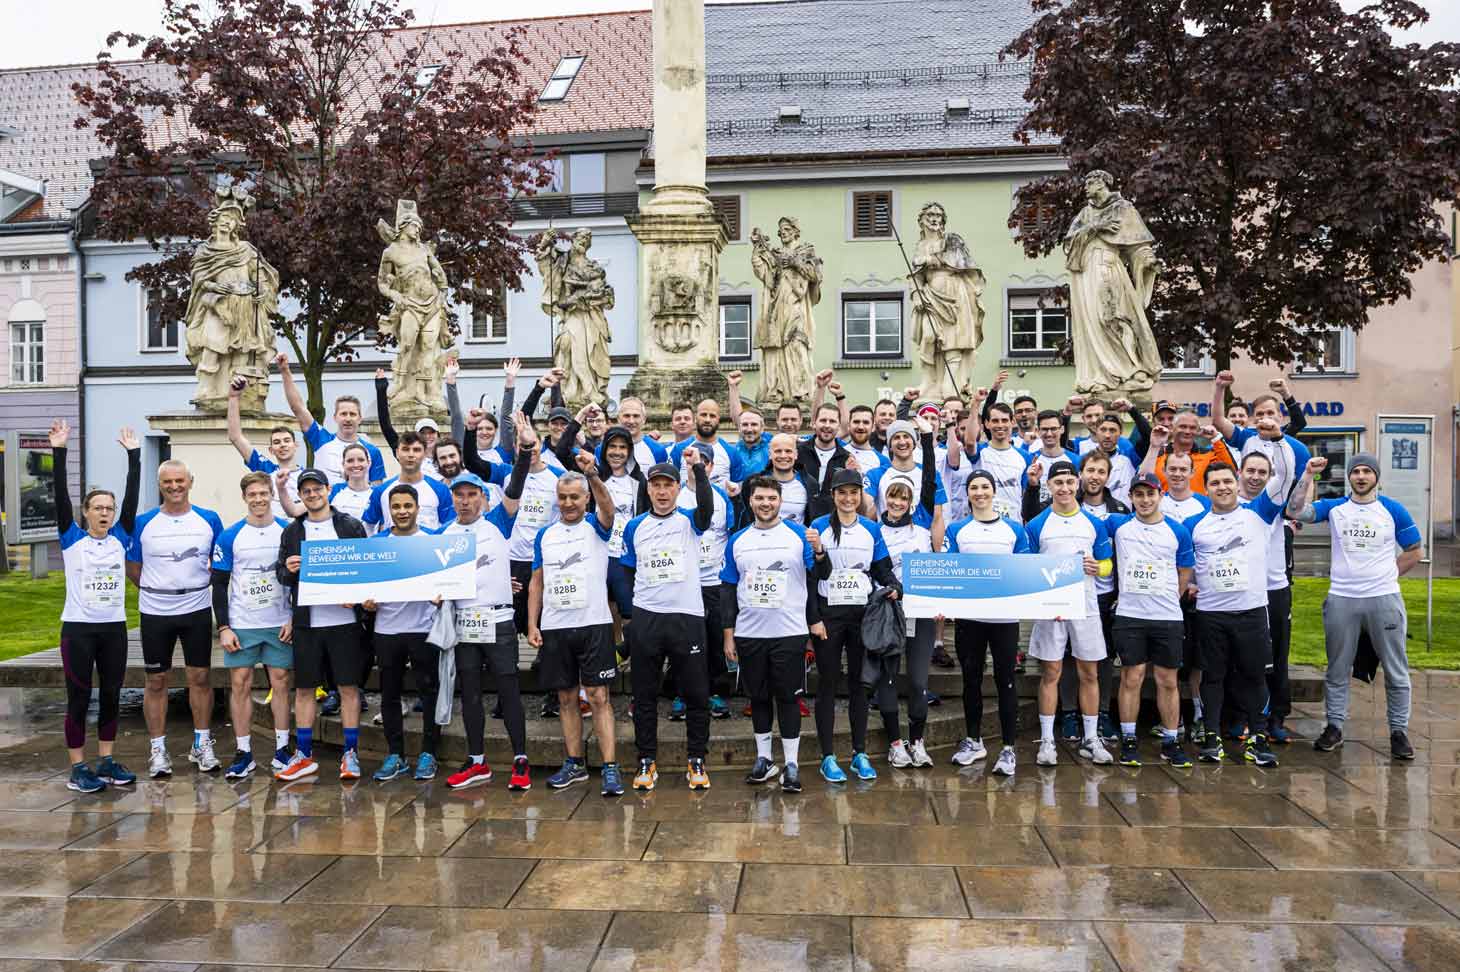 Gruppenfoto aller Marathonläuferinnen und Läufer der voestalpine in Bruck an der Mur